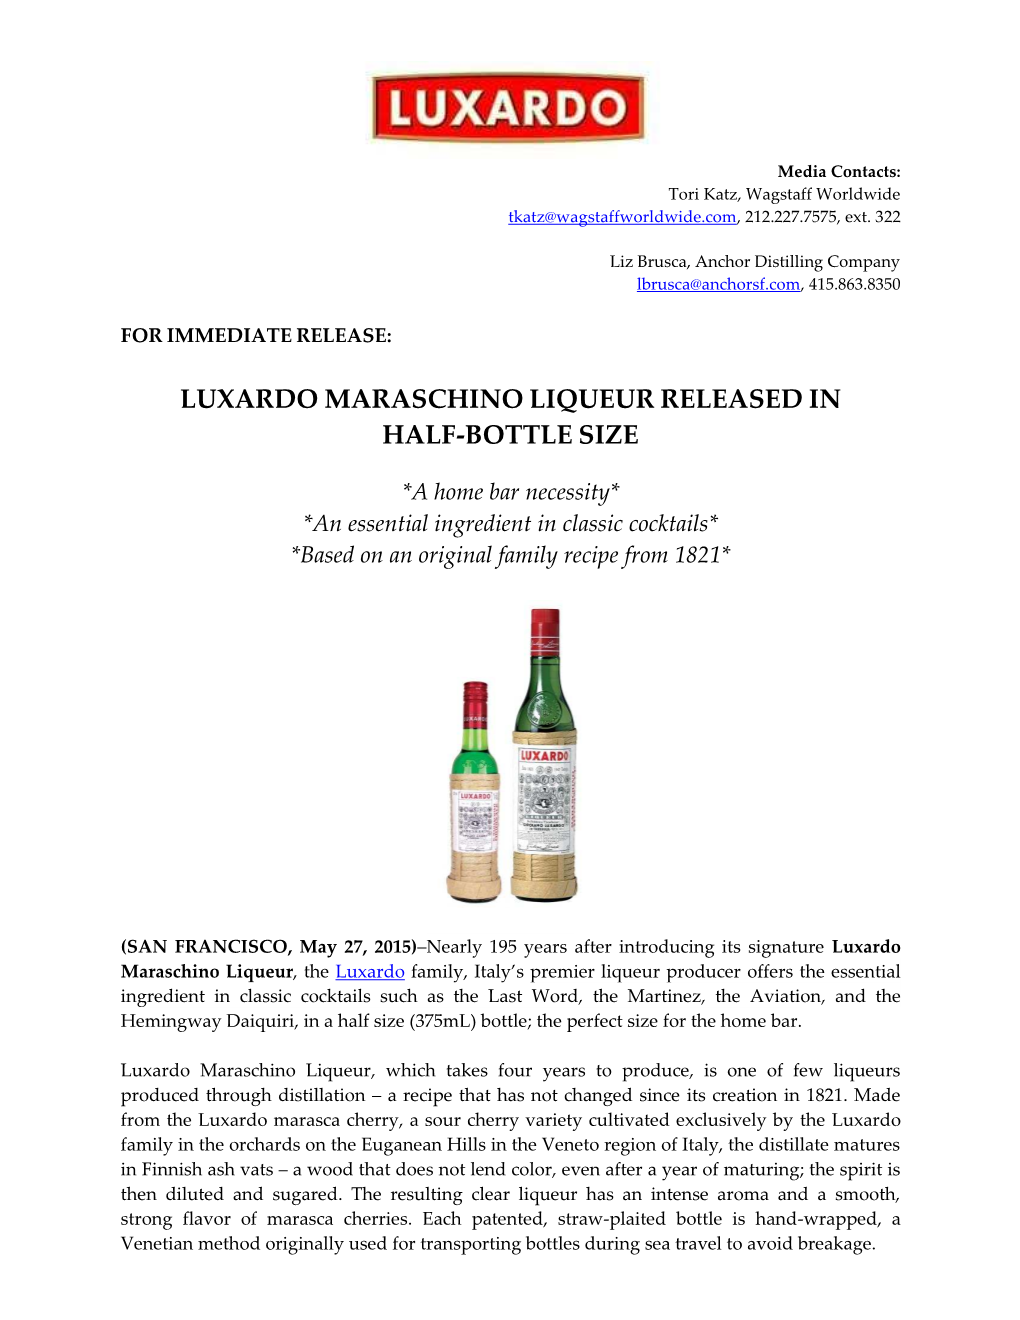 Luxardo Maraschino Liqueur Released in Half-Bottle Size